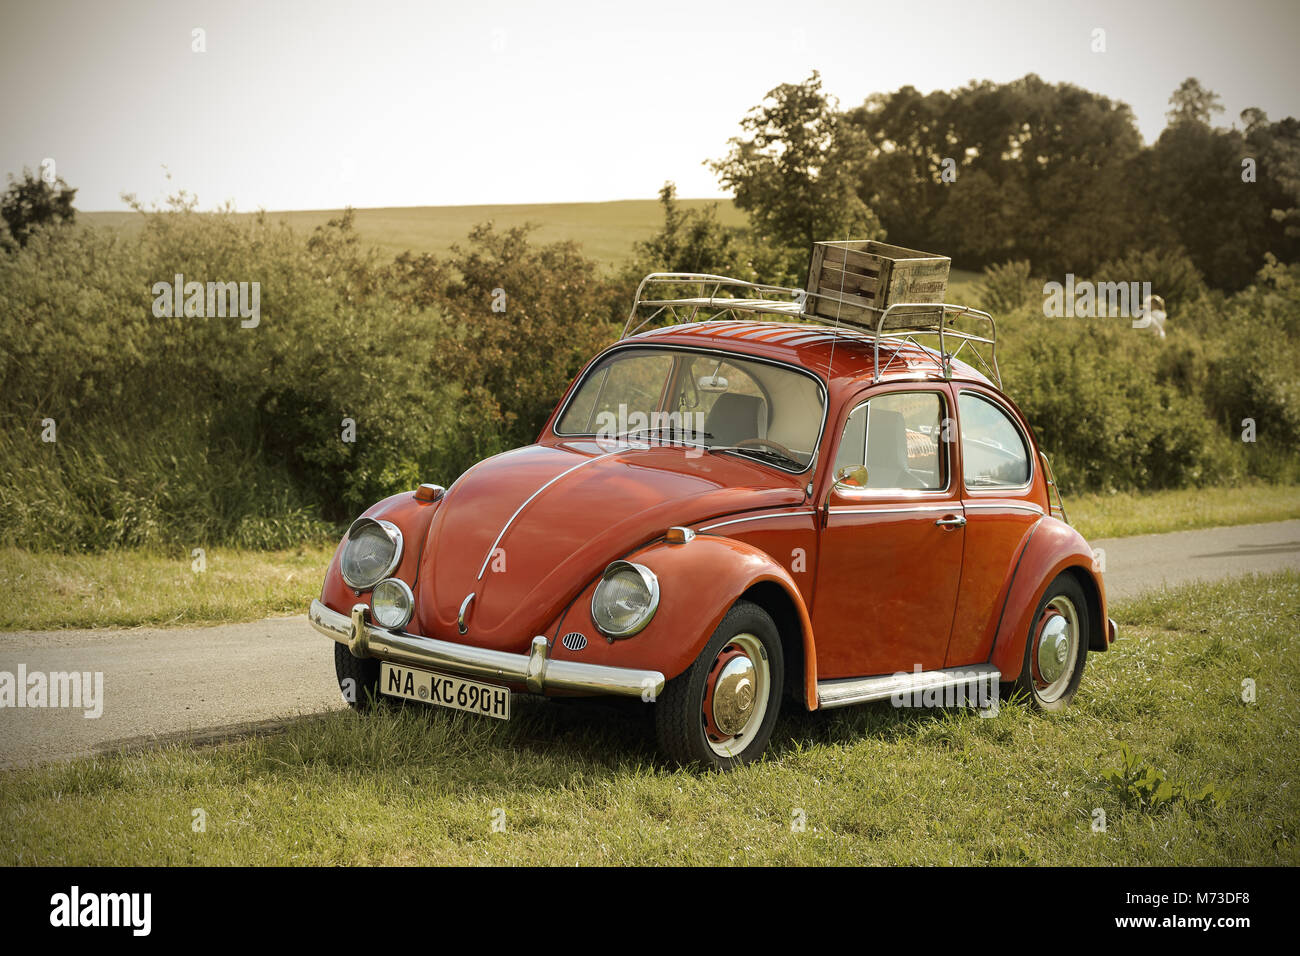 Orange Volkswagen Beetle Stock Photo